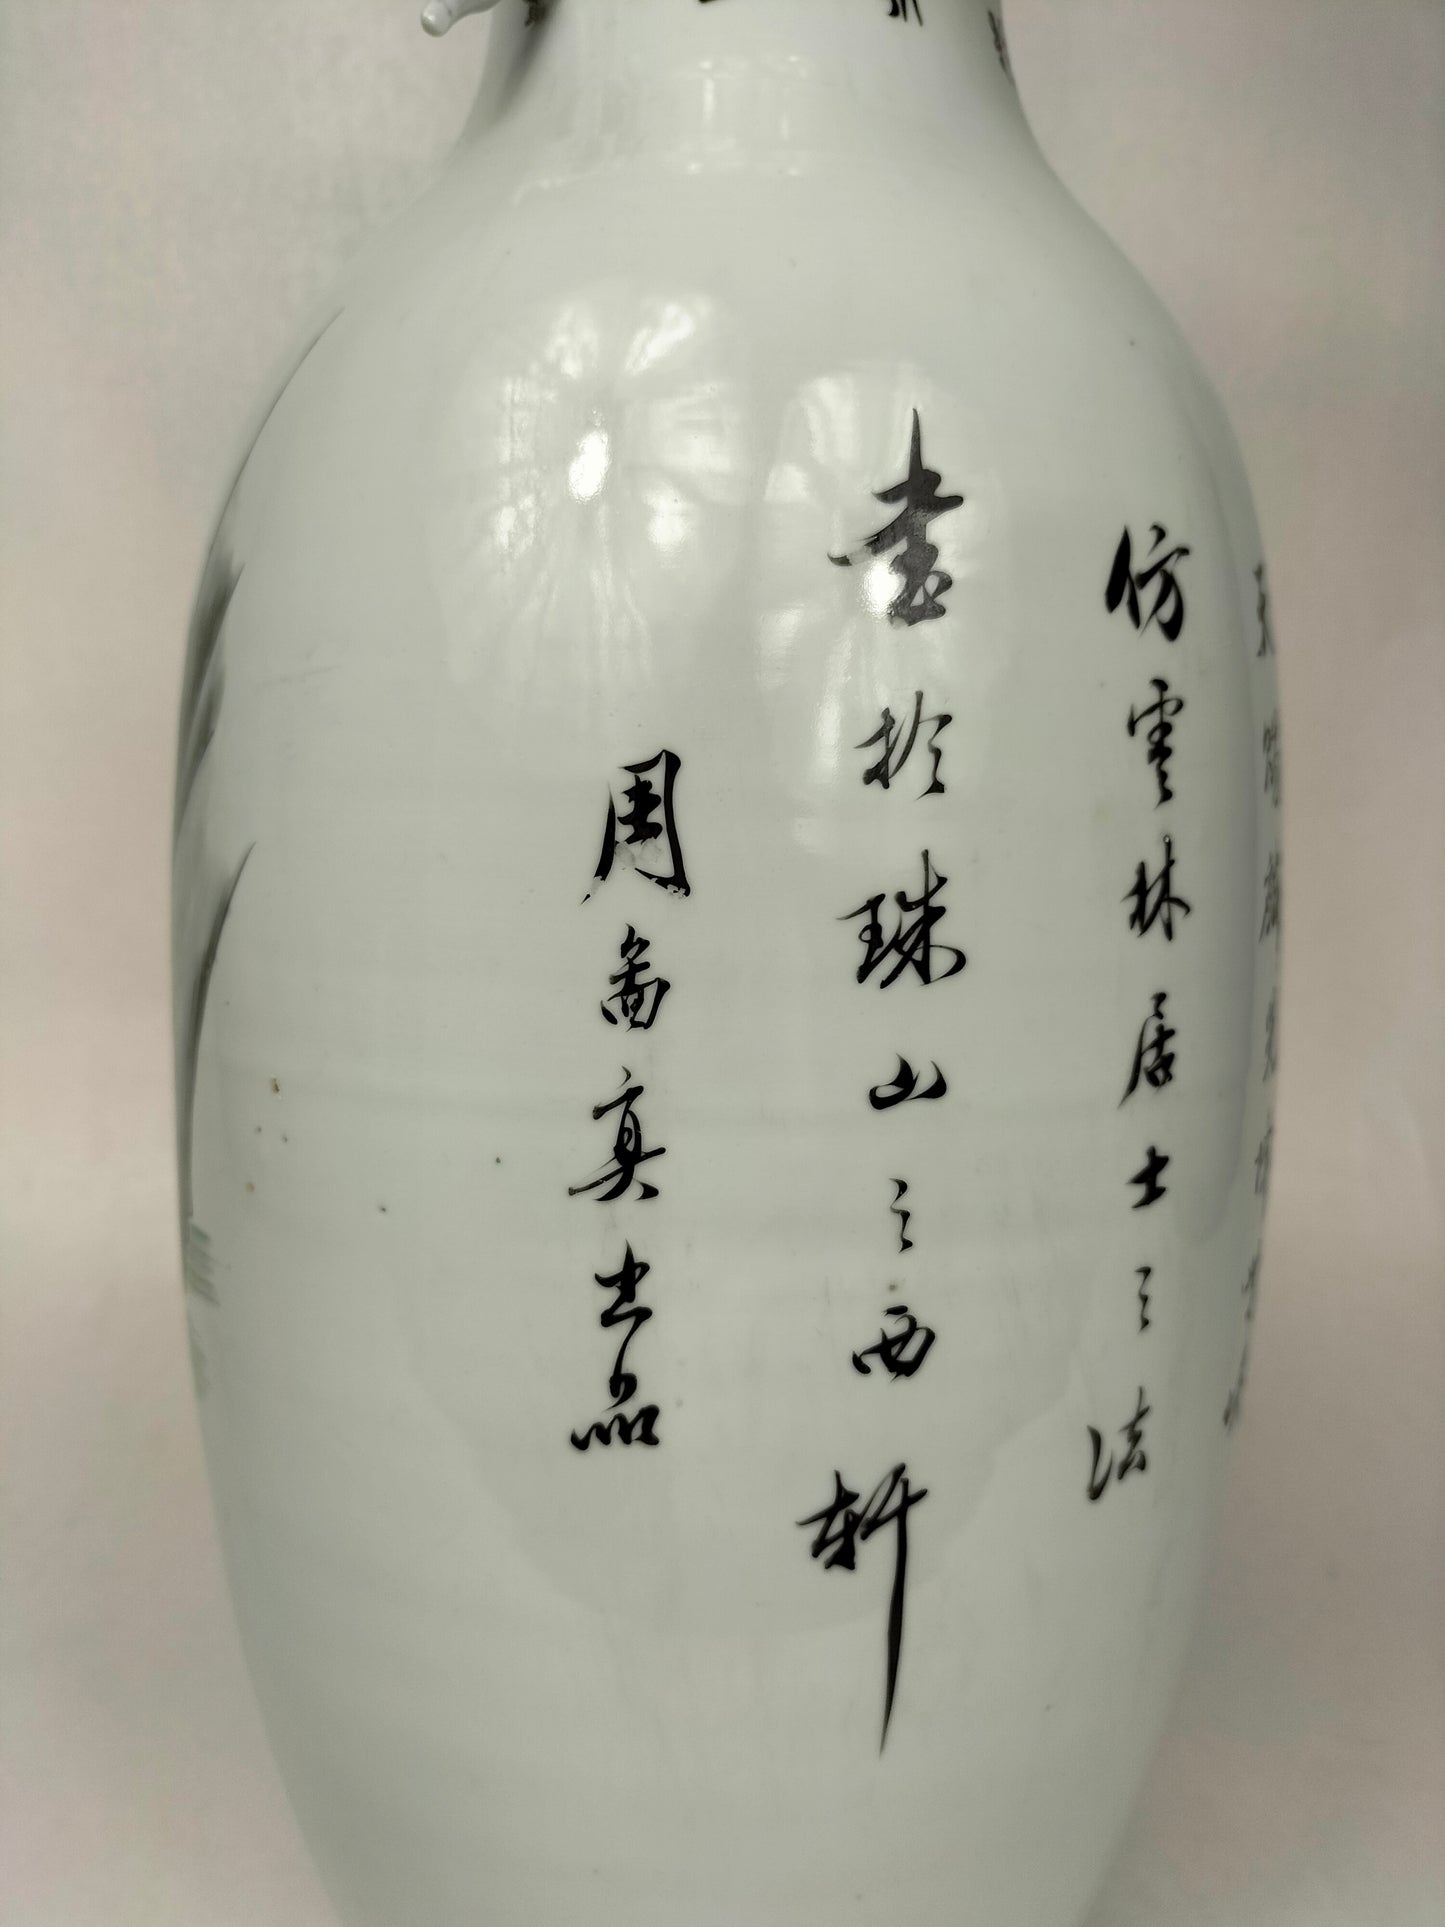 مزهرية صينية أثرية كبيرة مزينة بأشكال وكيلين // فترة الجمهورية (1912-1949)